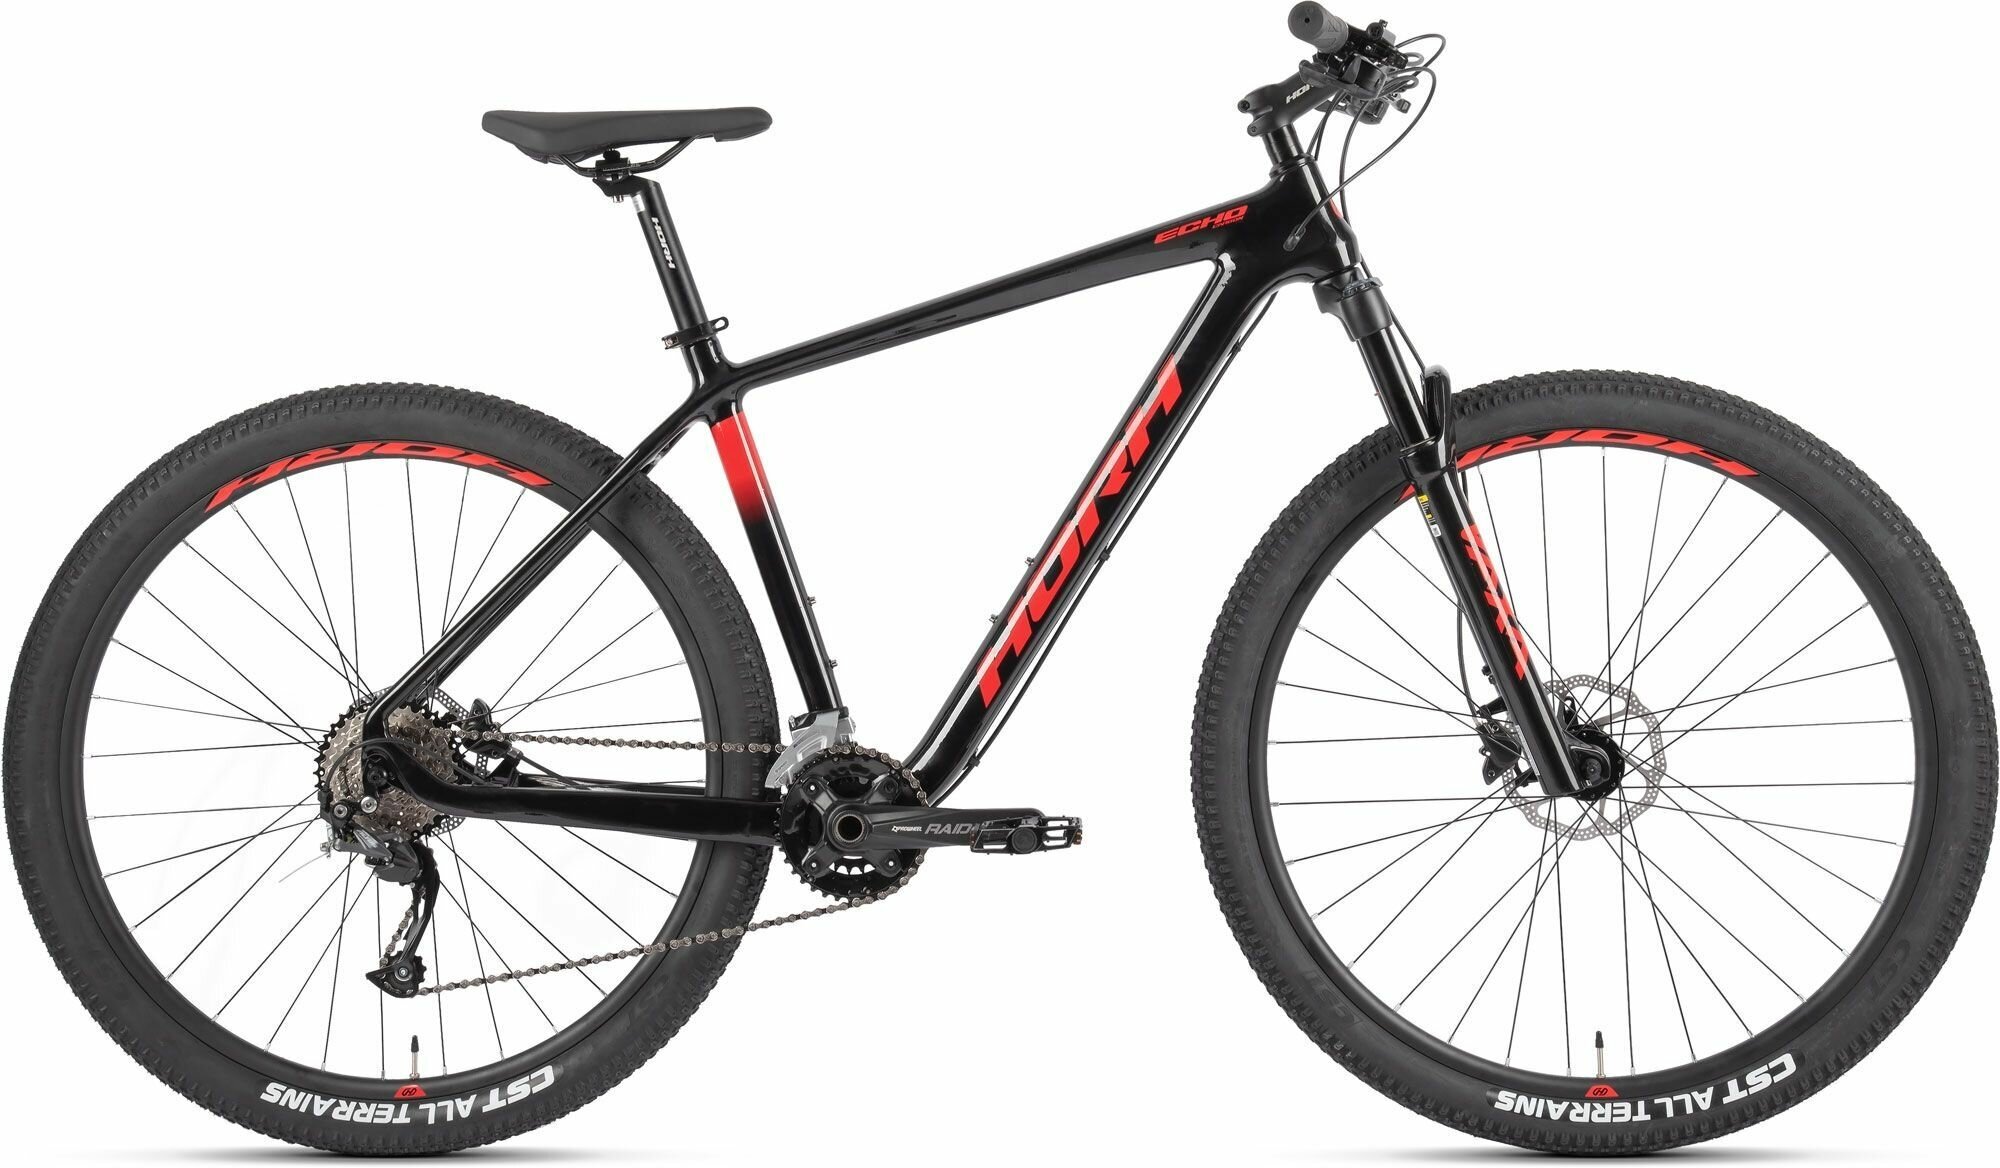 Велосипед горный HORH ECHO-9.1 29 carbon (2023), хардтейл, взрослый, мужской, карбоновая рама, оборудование Shimano M2010, 18 скоростей, дисковые гидравлические тормоза, цвет Black-Red, черный/красный цвет, размер рамы 19", для роста 180-190 см